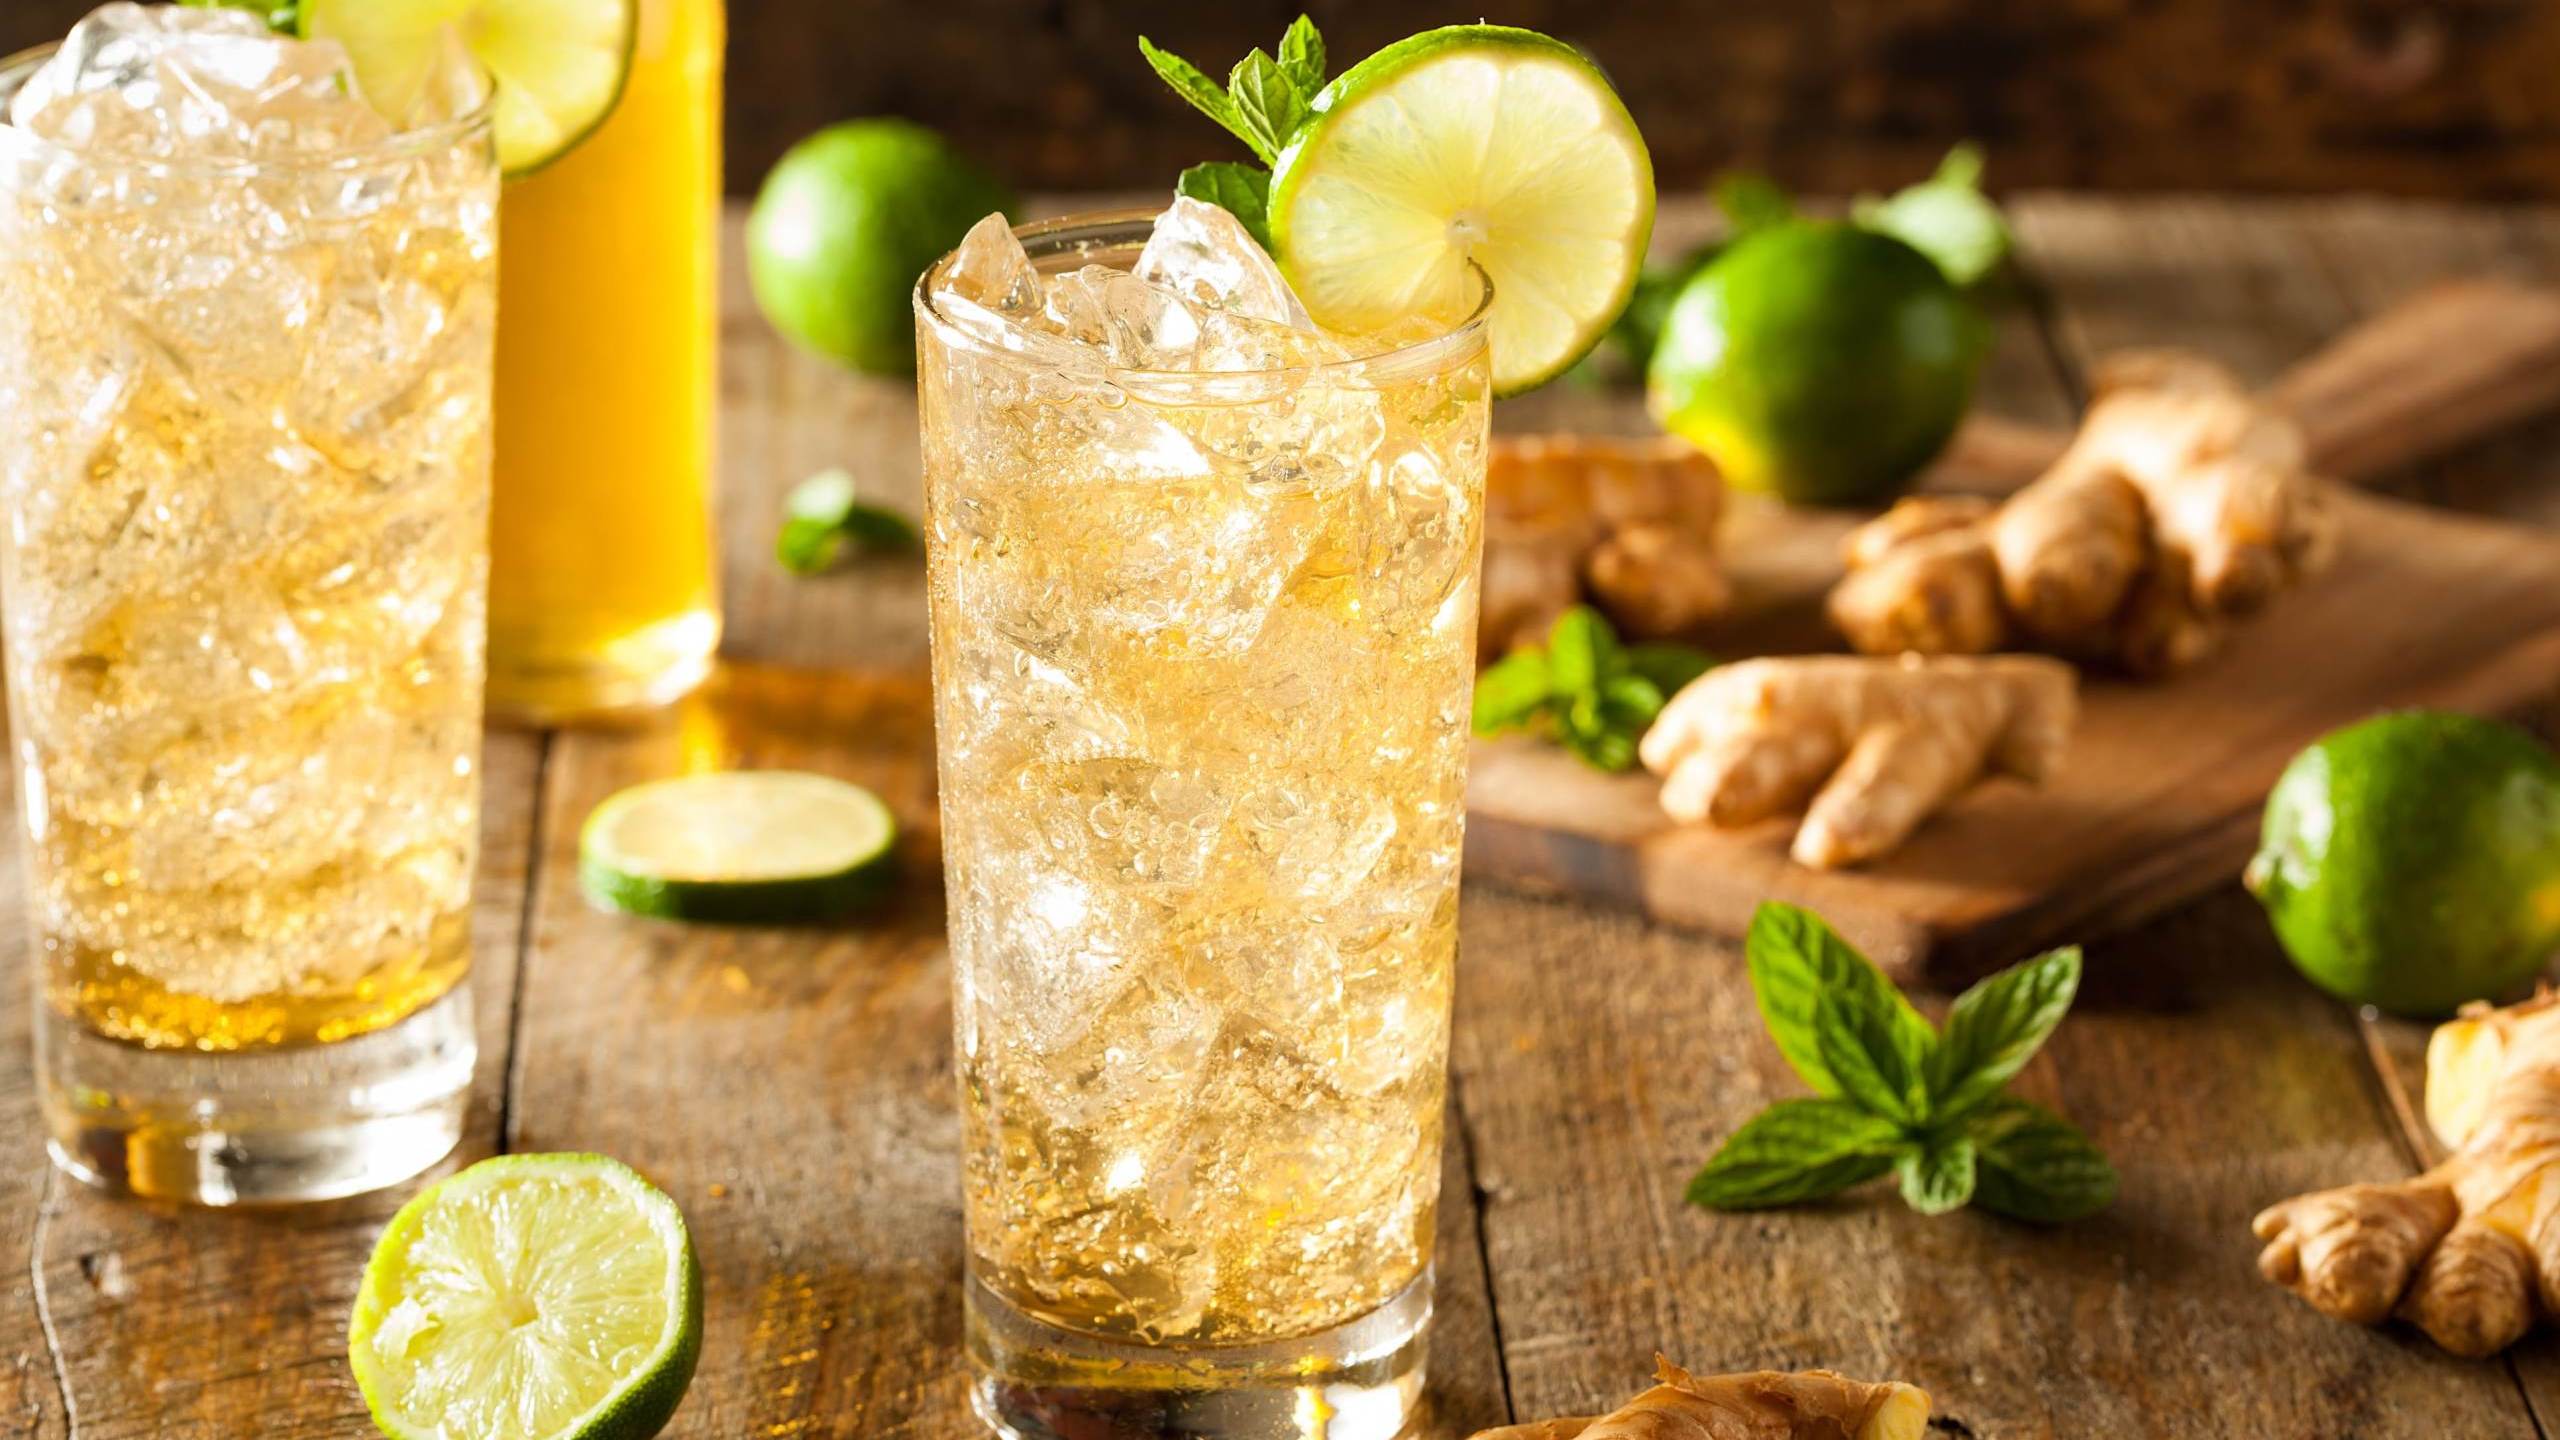 Deux grands verres remplies de glaçons avec une boisson sans alcool dorée et pétillante. Des racines de gingembre, des tranches de lime et des feuilles de menthe sont parsemés autours.